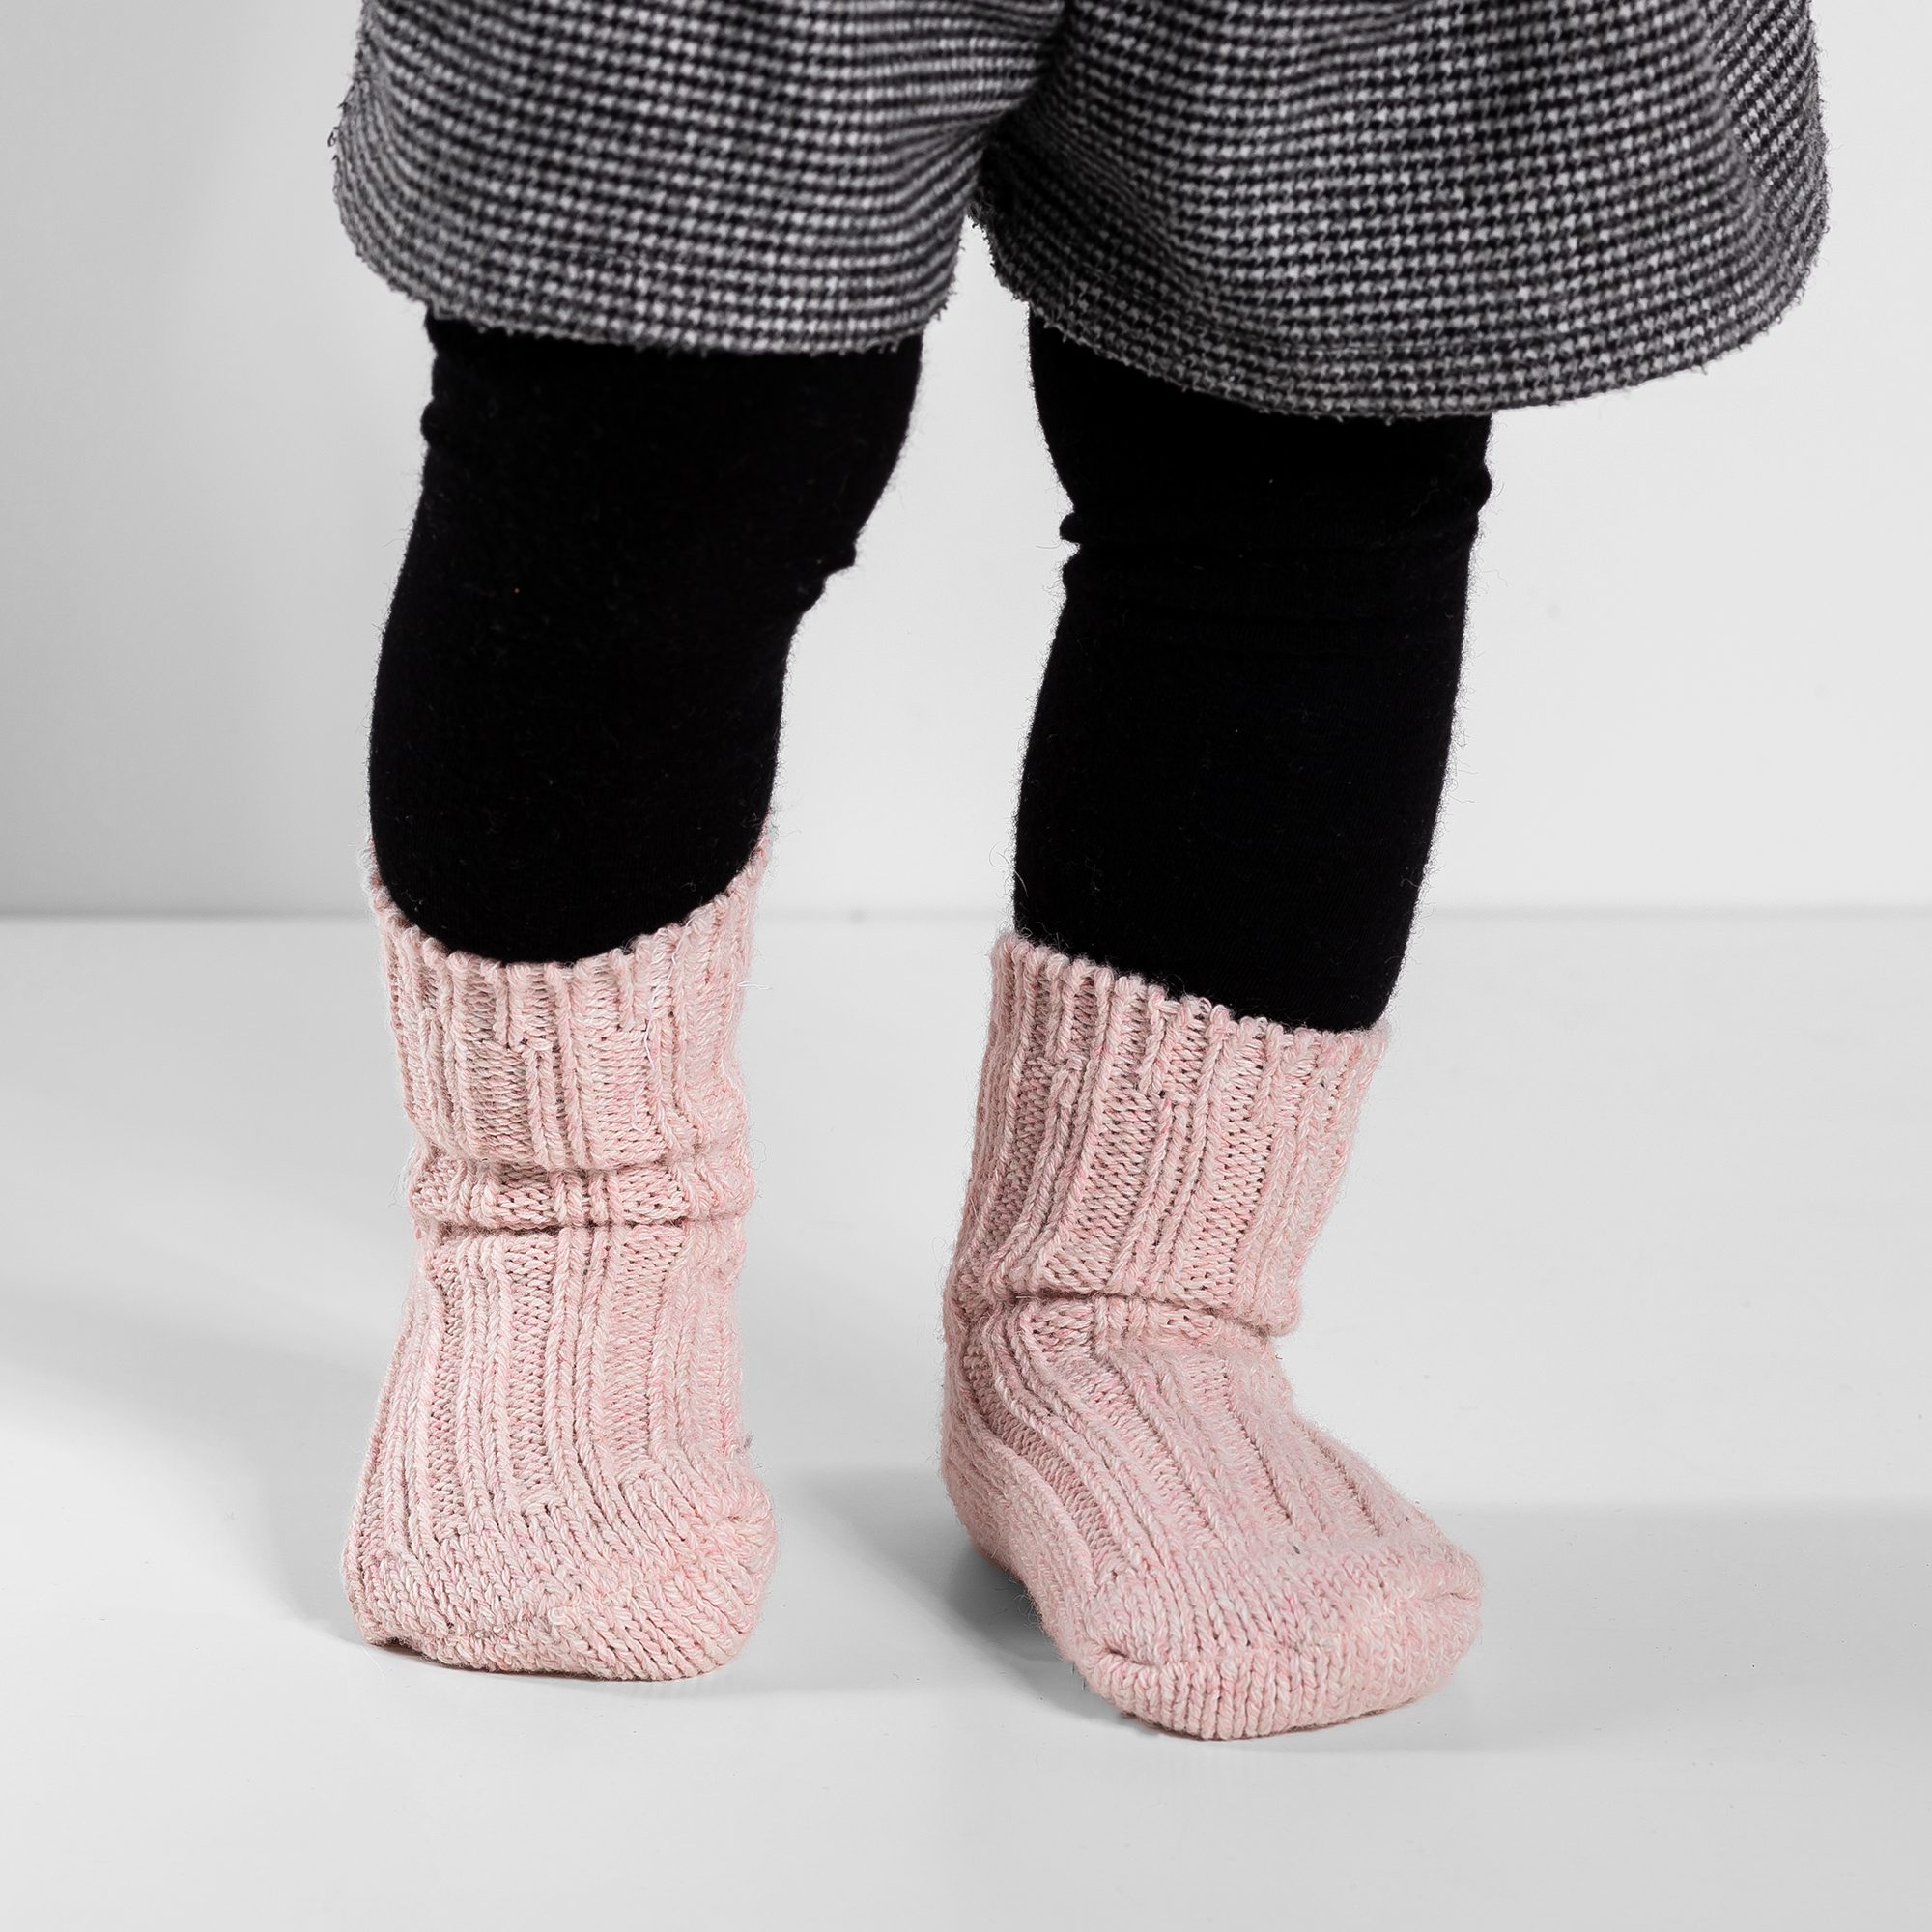 Barefoot wool socks for kids - Magical Socks Merino - LIGHT PINK